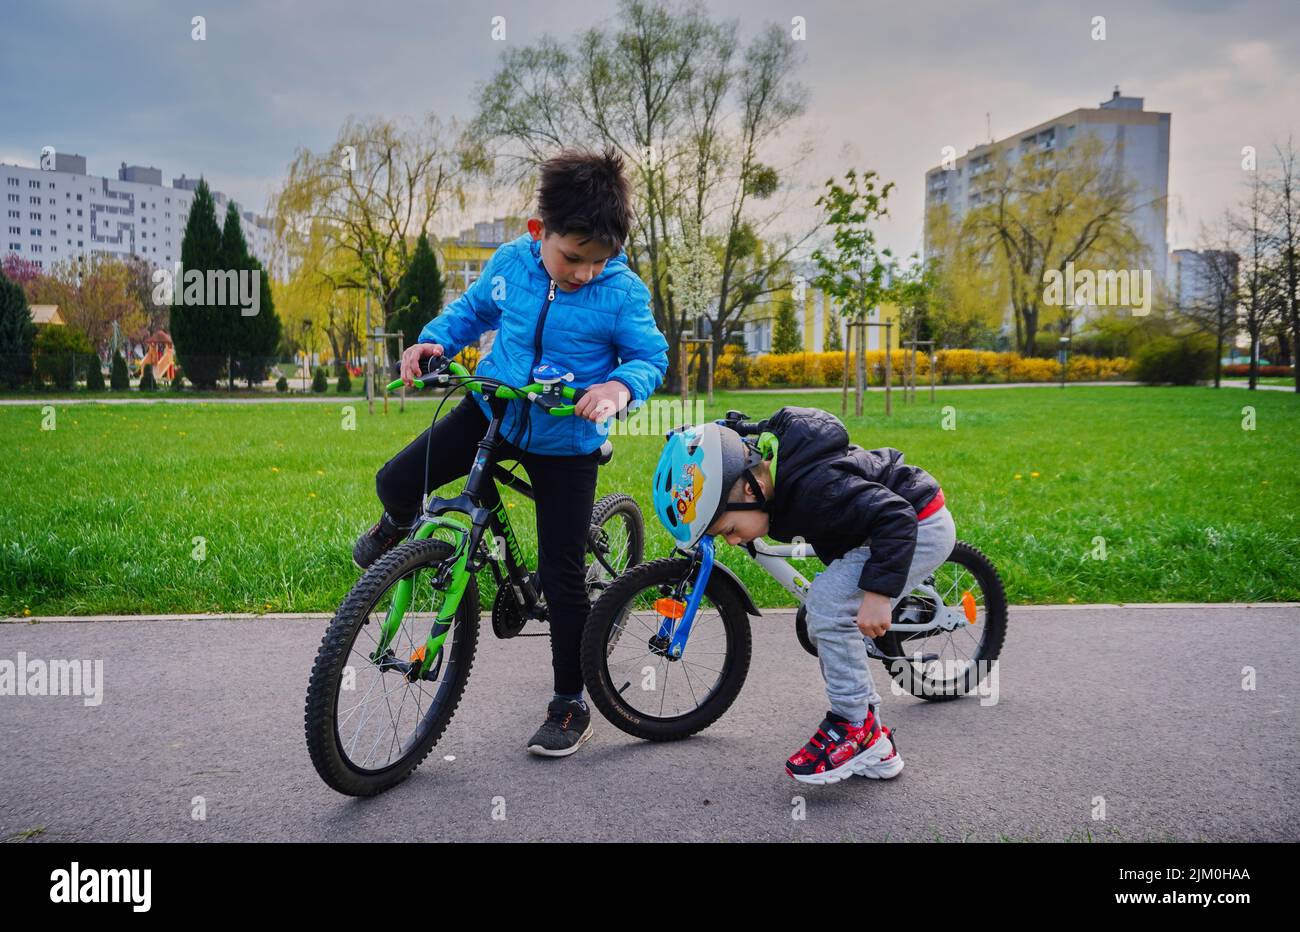 Ein kleiner Junge auf einem Fahrrad und ein anderer auf einem Asphaltweg auf der Suche nach etwas in einem Park im Bezirk Orla Bialego. Stockfoto